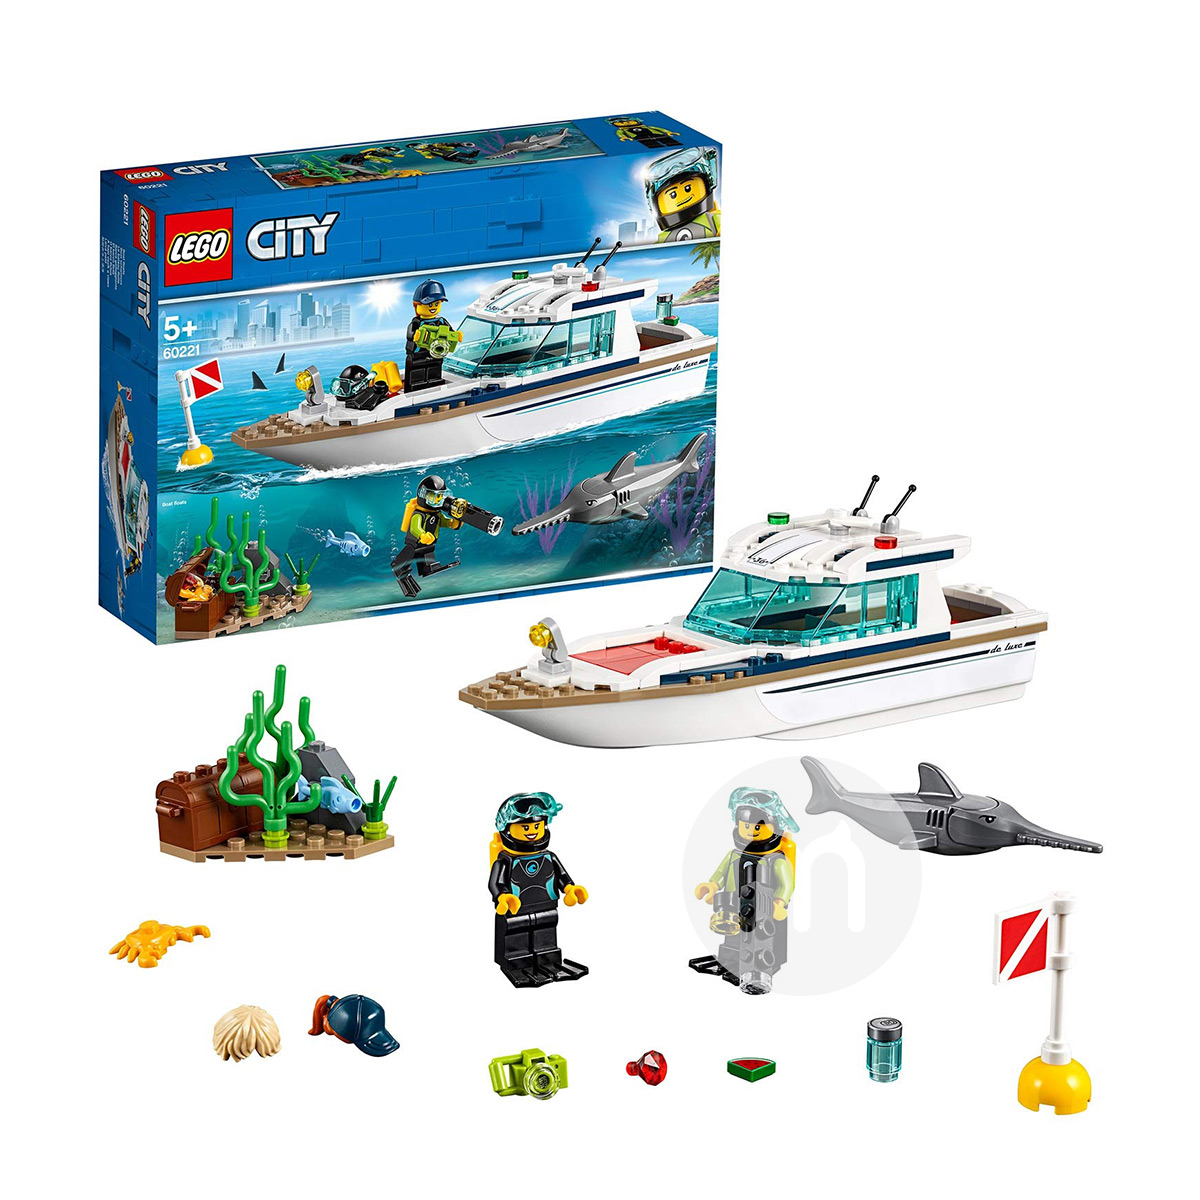 LEGOデンマークレゴシティシリーズダイビングヨット60221